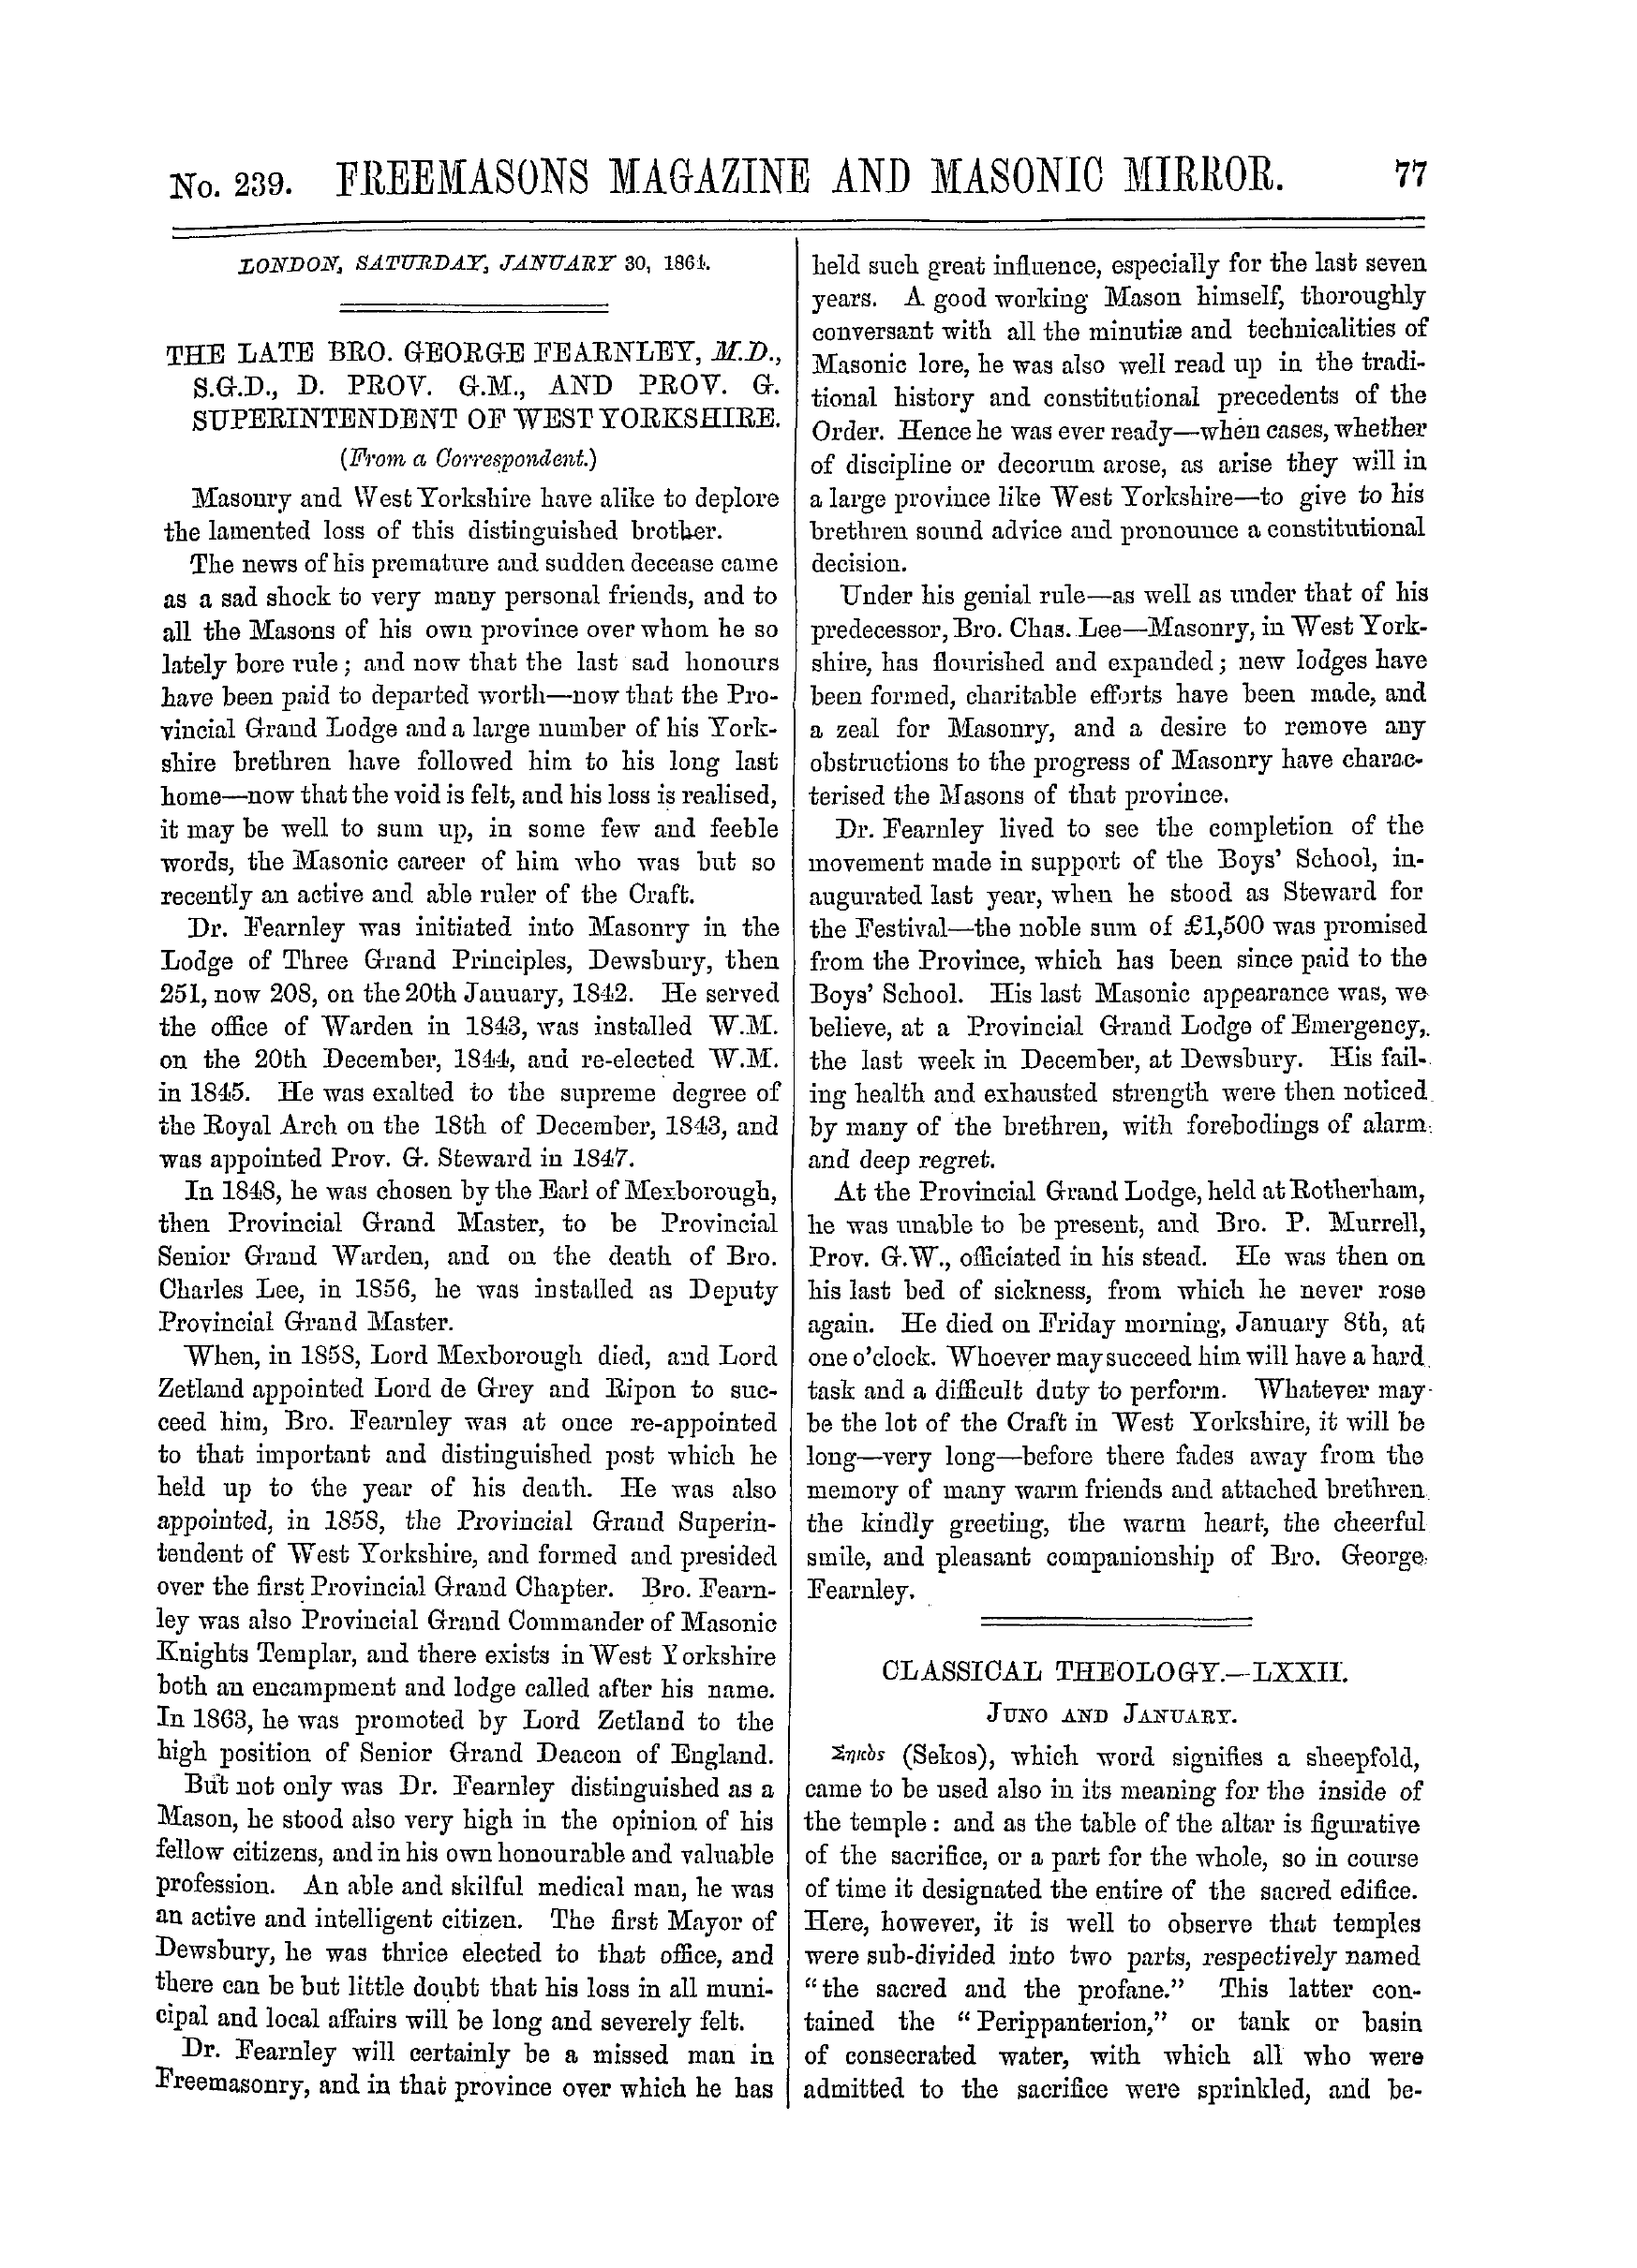 The Freemasons' Monthly Magazine: 1864-01-30: 1